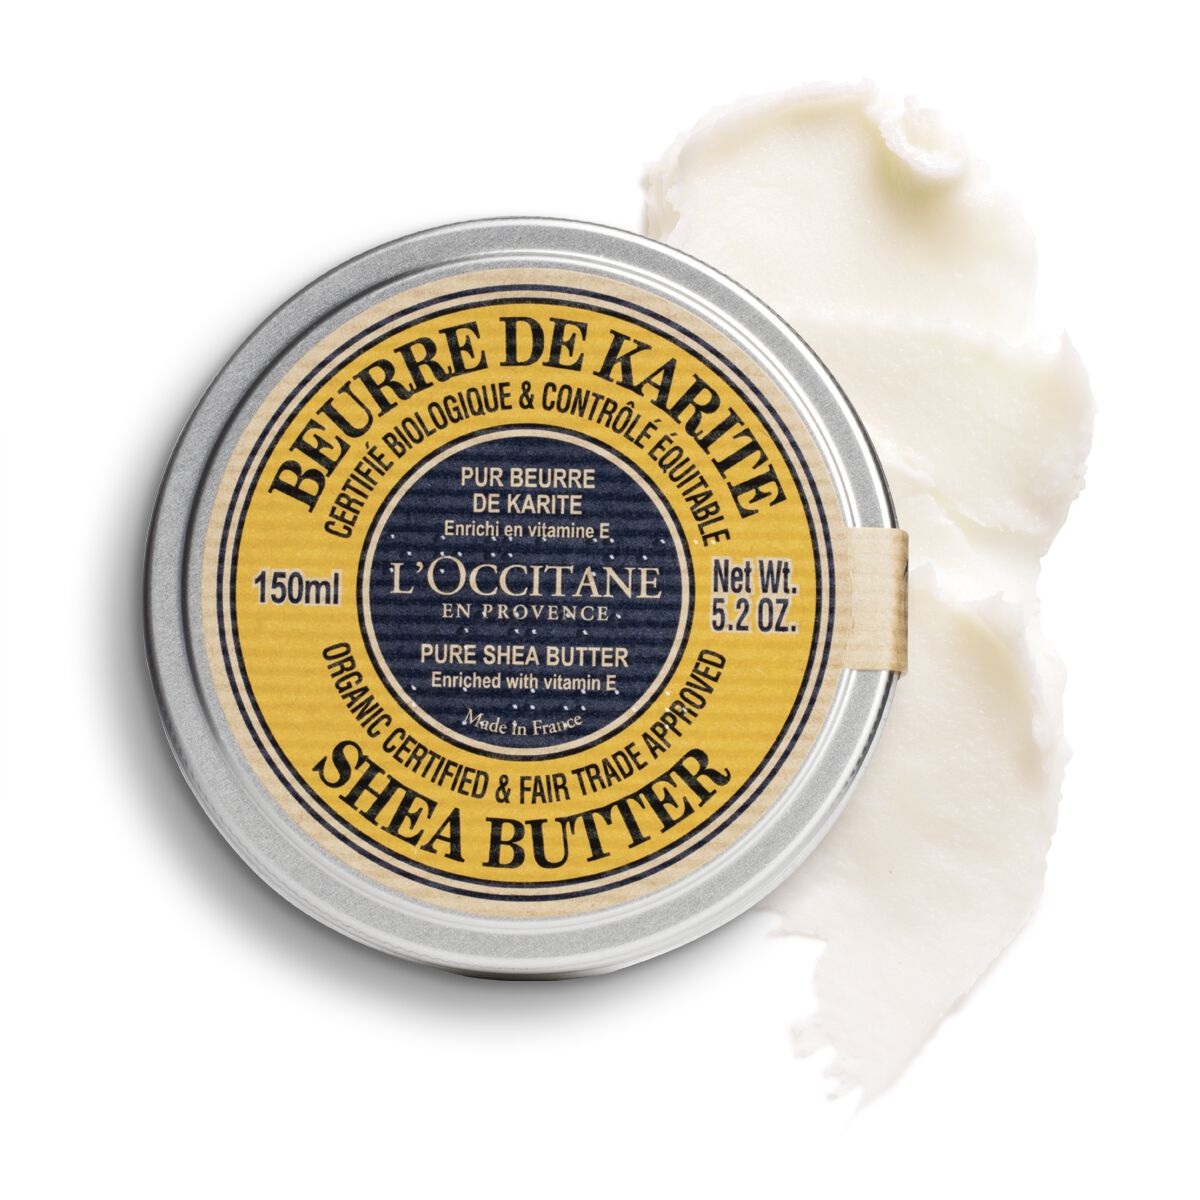 L'occitane Organic-certified* Pure Shea Butter 5.2 Fl oz